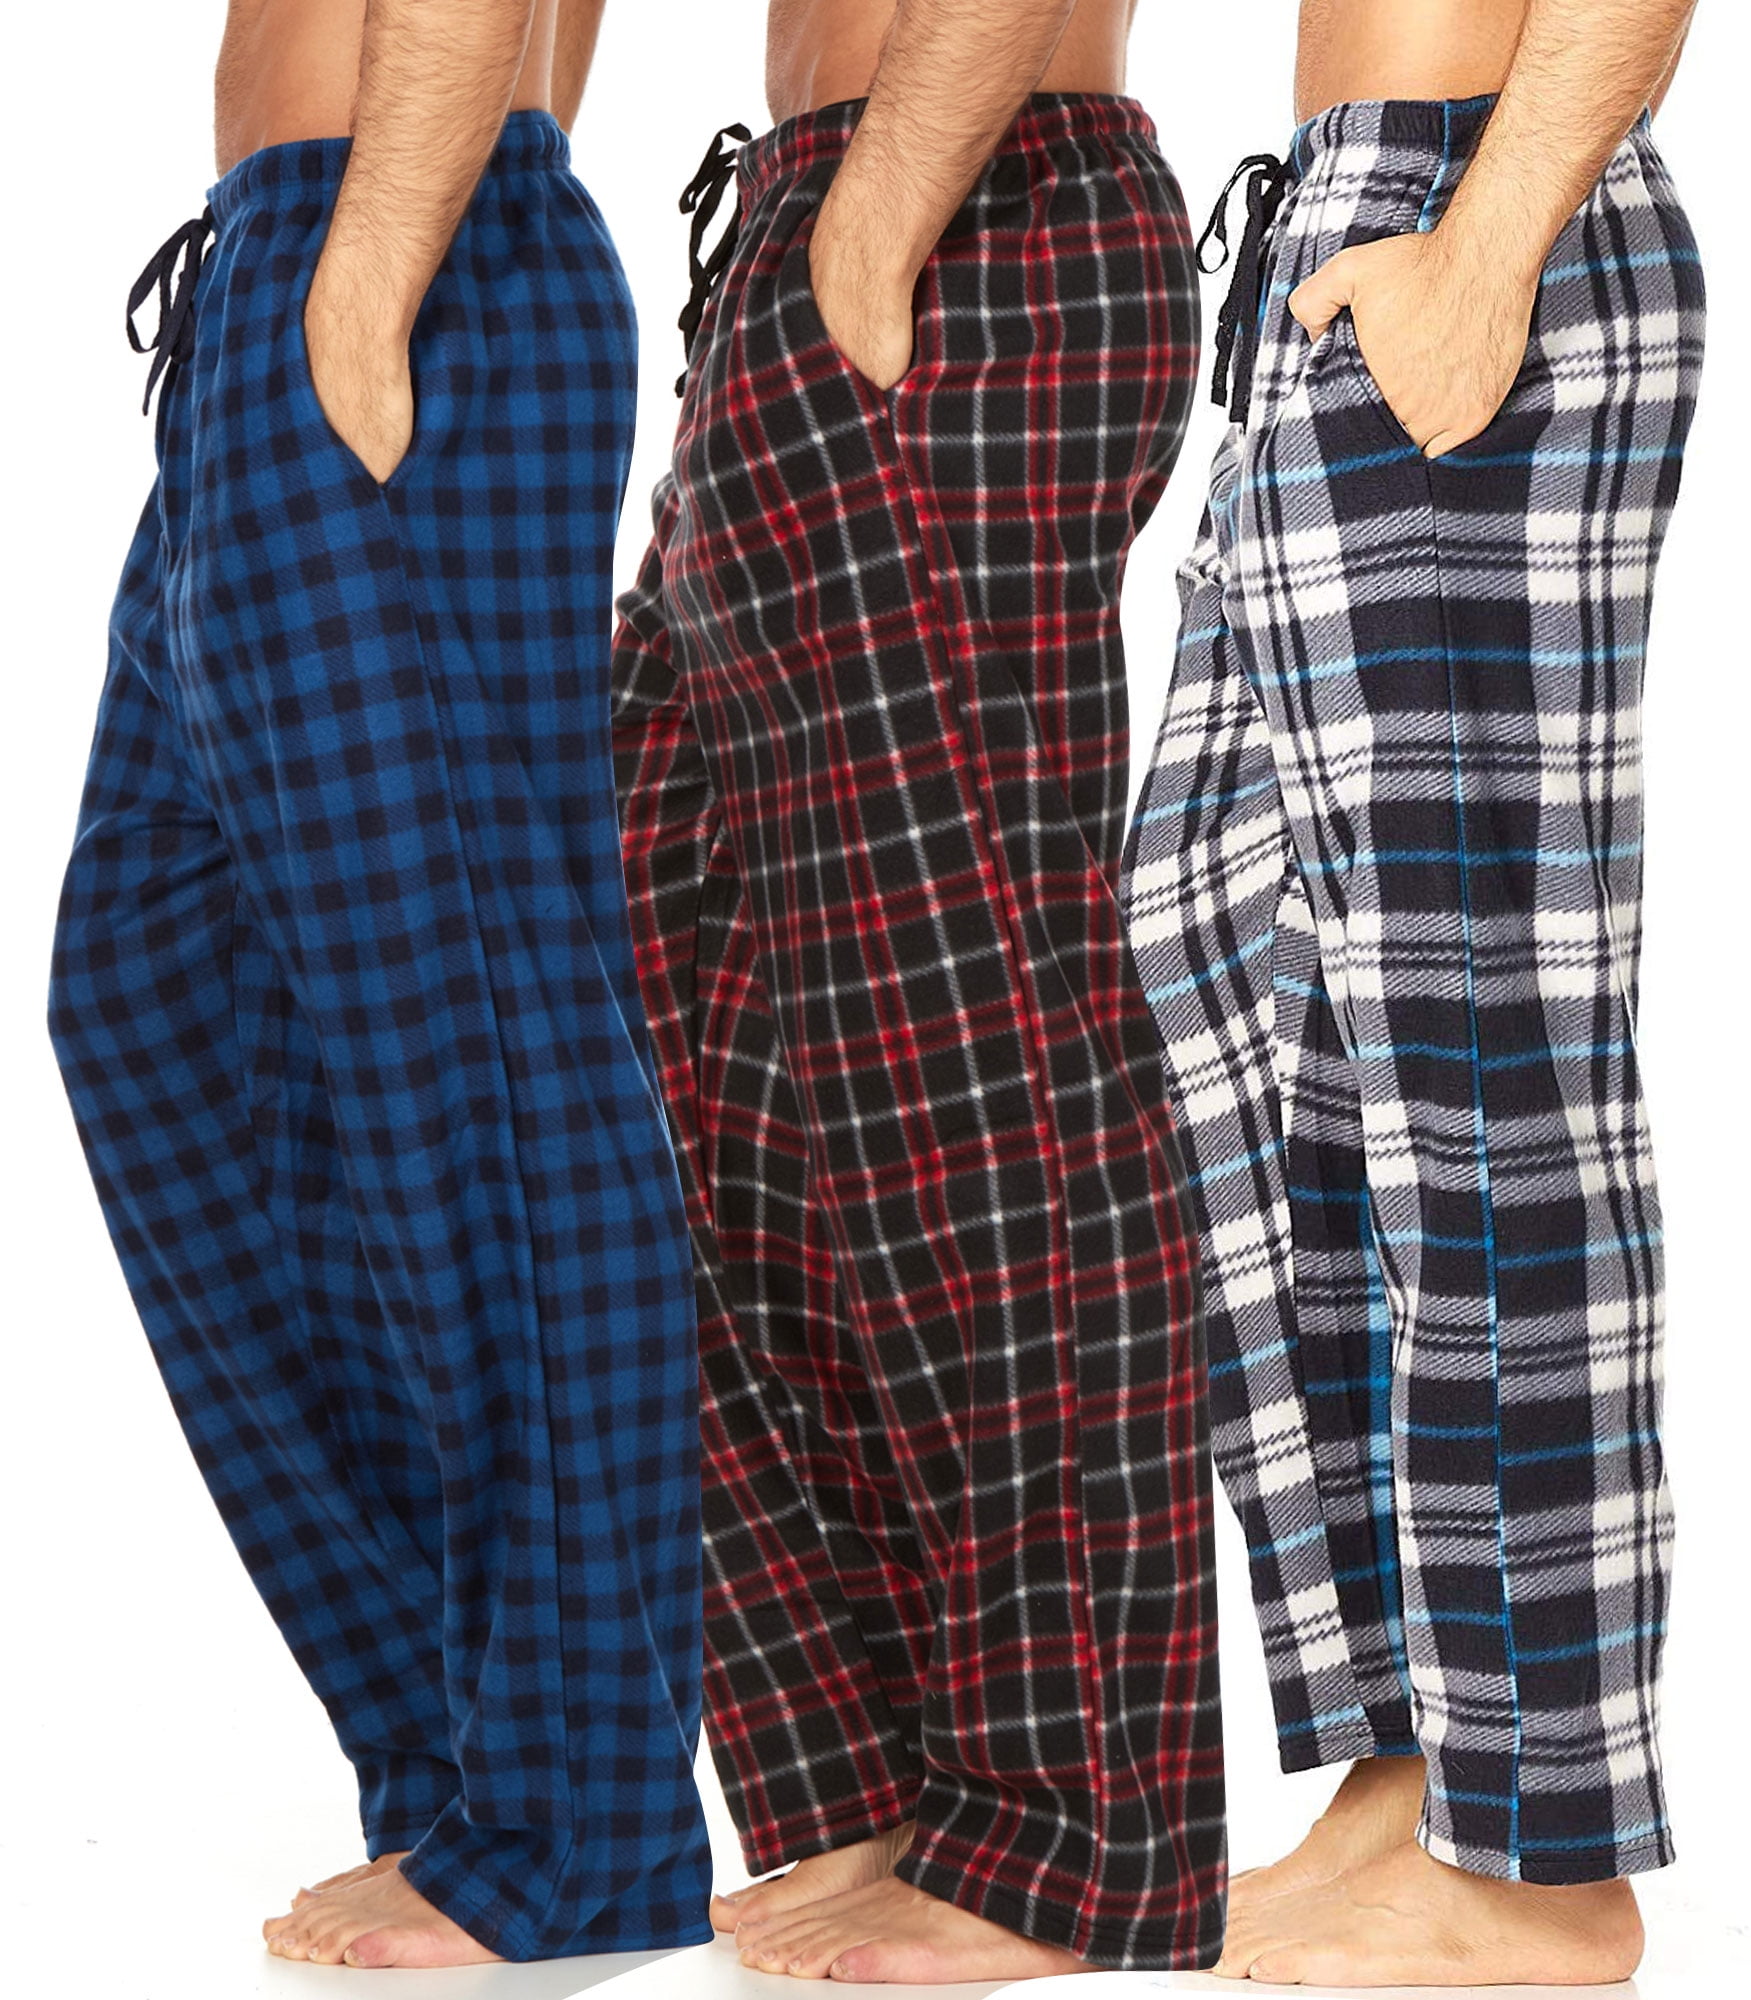 DARESAY Mens 3 Pack Pajama Pants for Men, Philippines